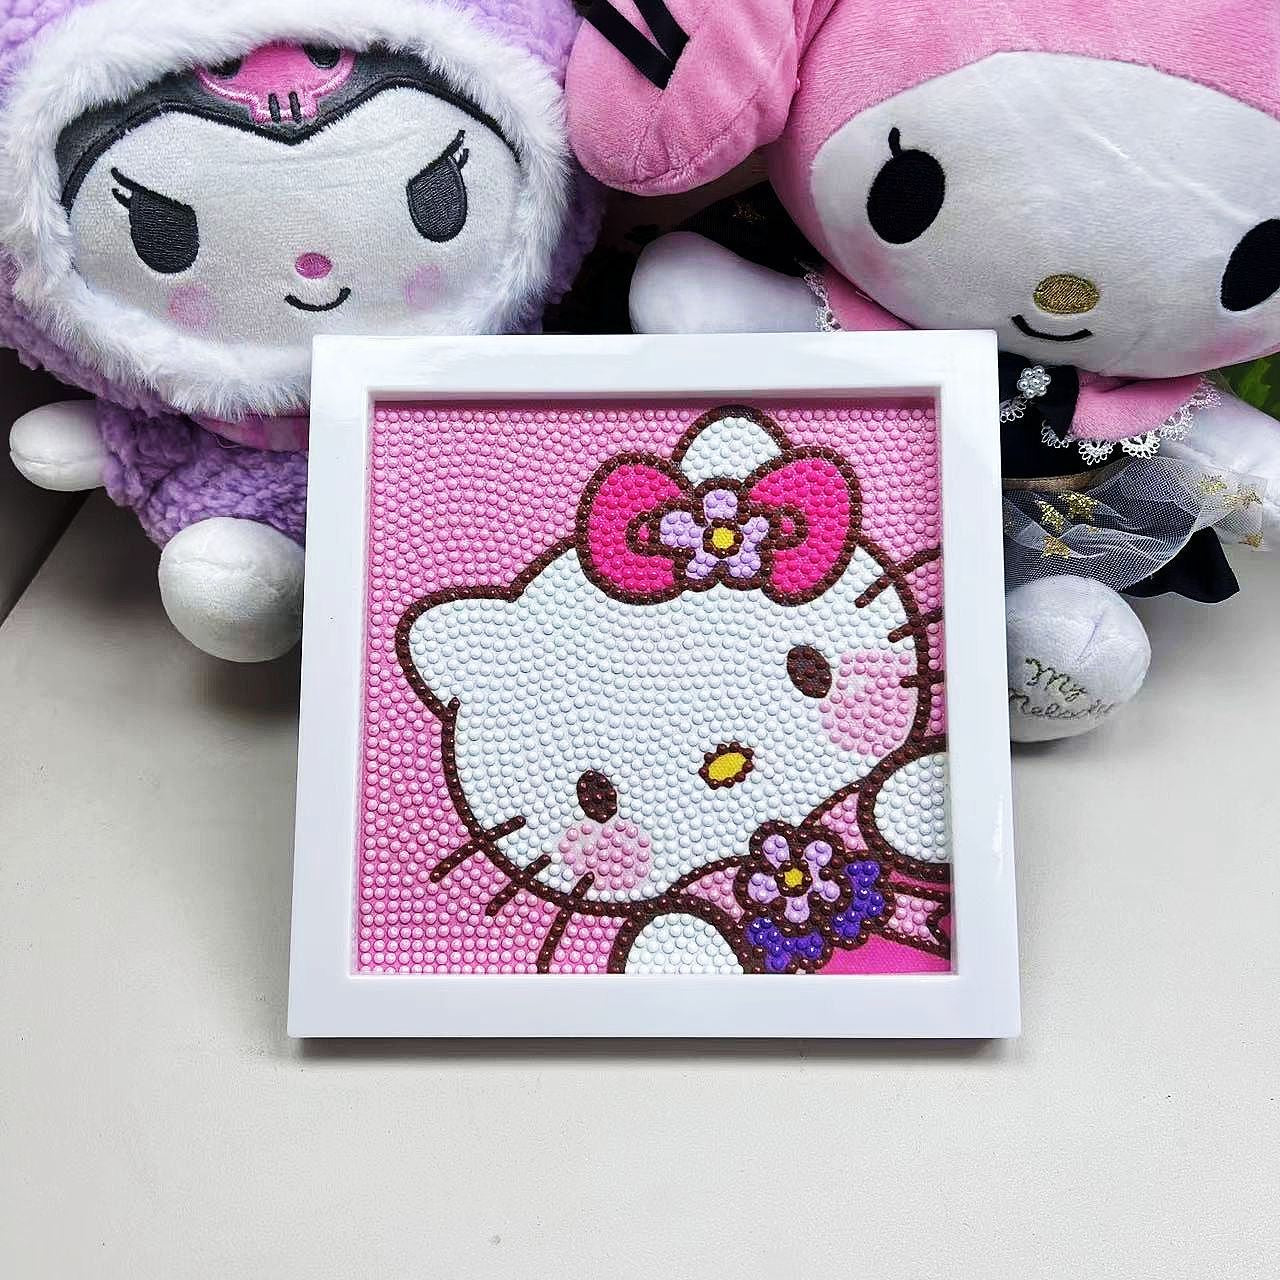 Kits de pintura de diamantes de Hello Kitty con o sin marco